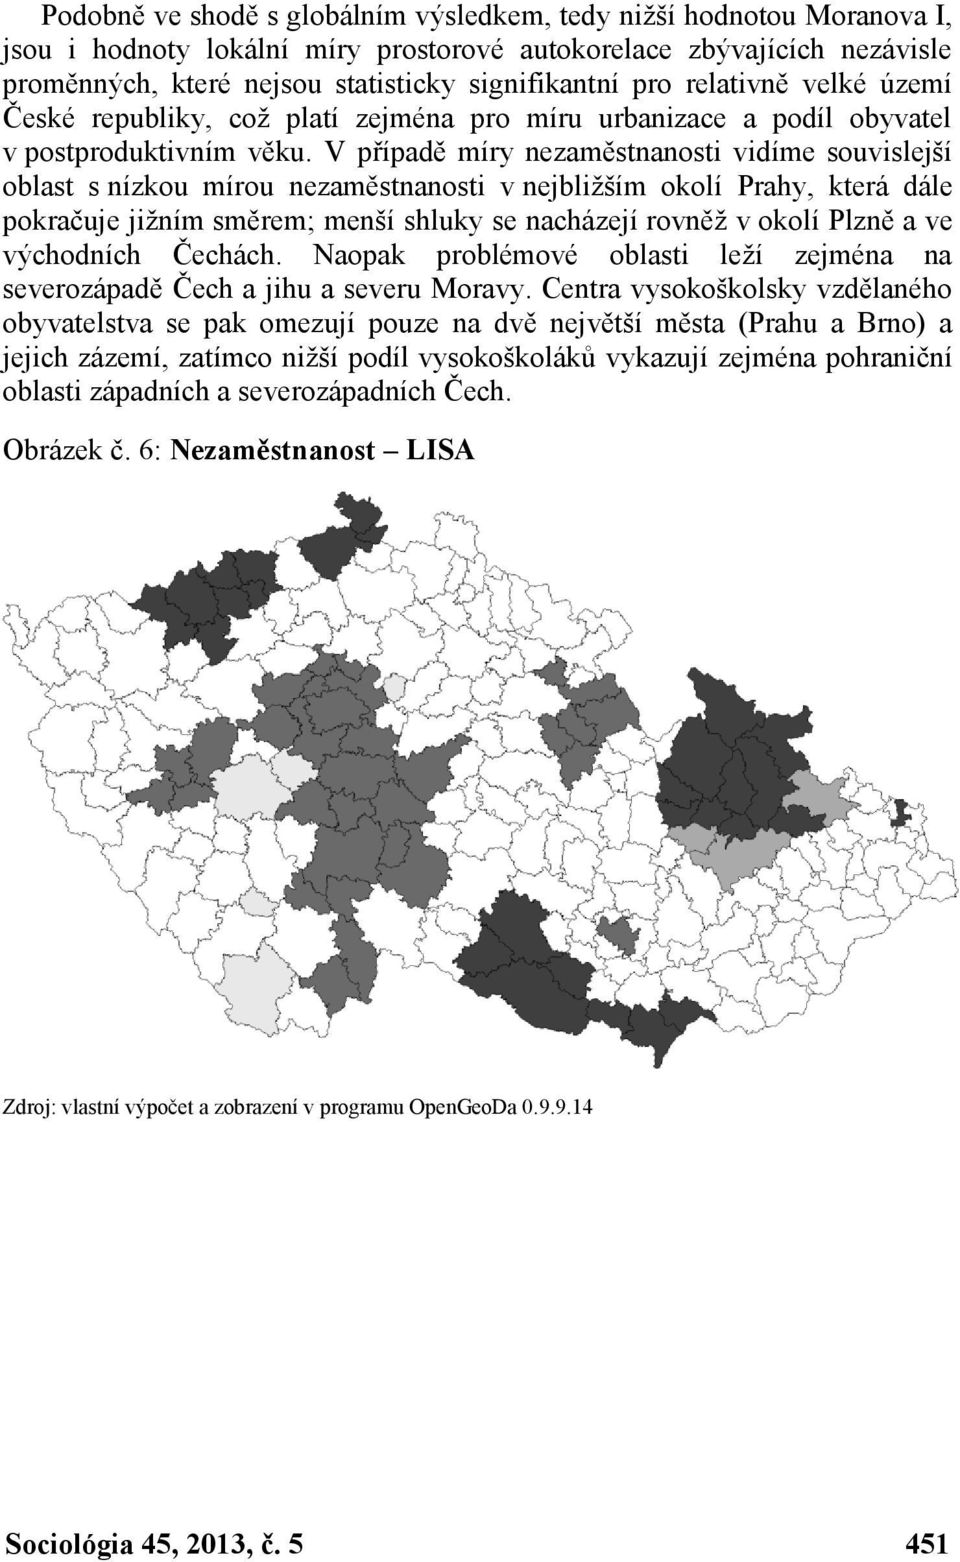 V případě míry nezaměstnanosti vidíme souvislejší oblast s nízkou mírou nezaměstnanosti v nejbližším okolí Prahy, která dále pokračuje jižním směrem; menší shluky se nacházejí rovněž v okolí Plzně a